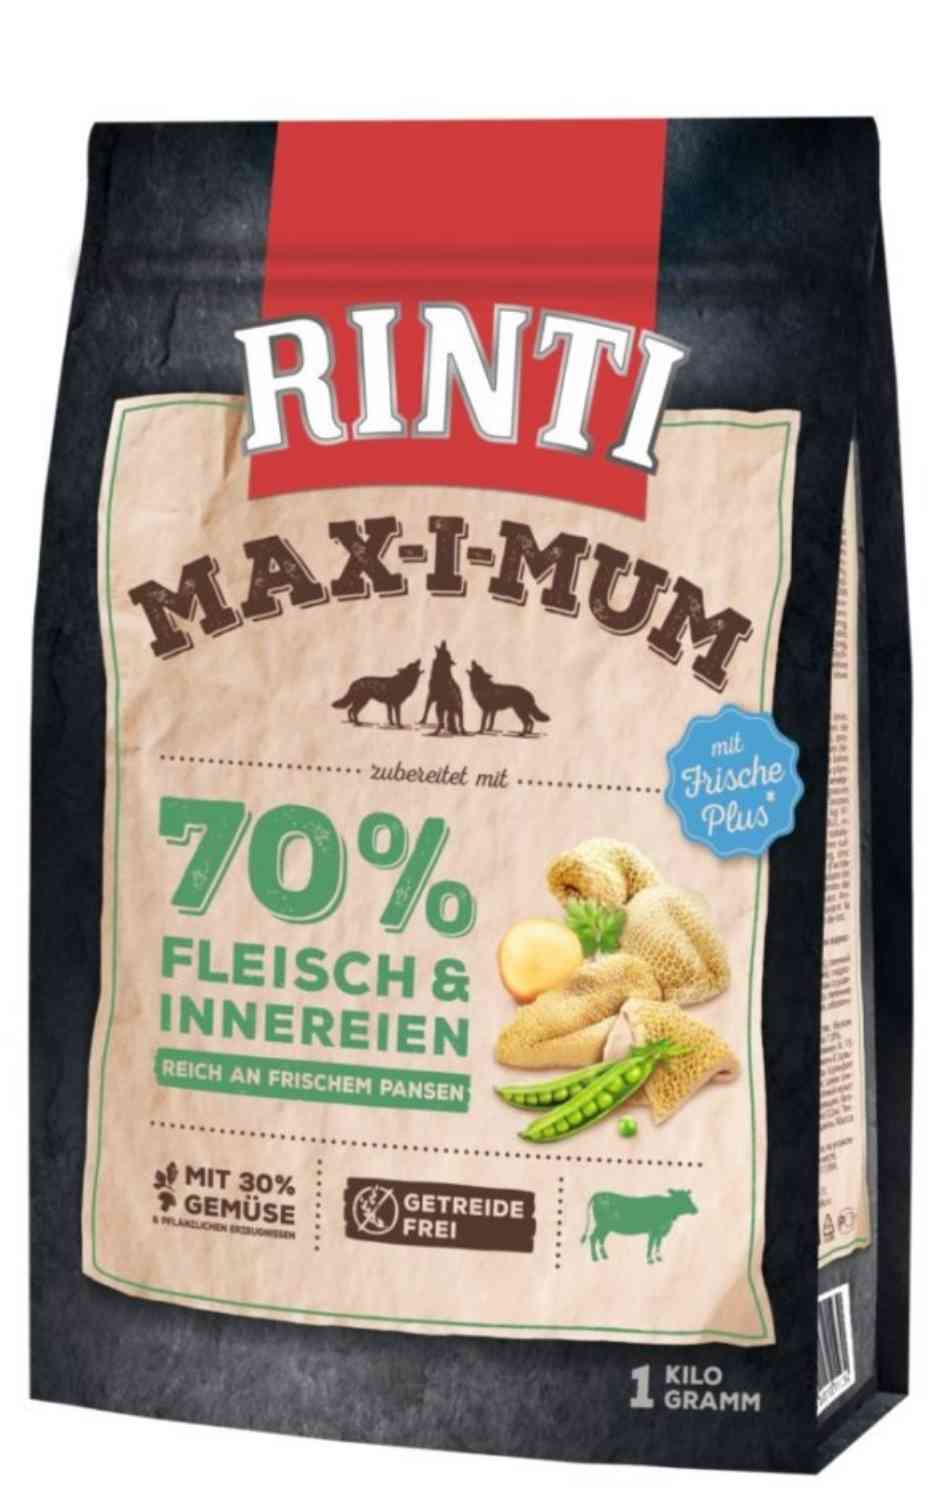 Rinti MAX-I-MUM Pansen 1 Kg